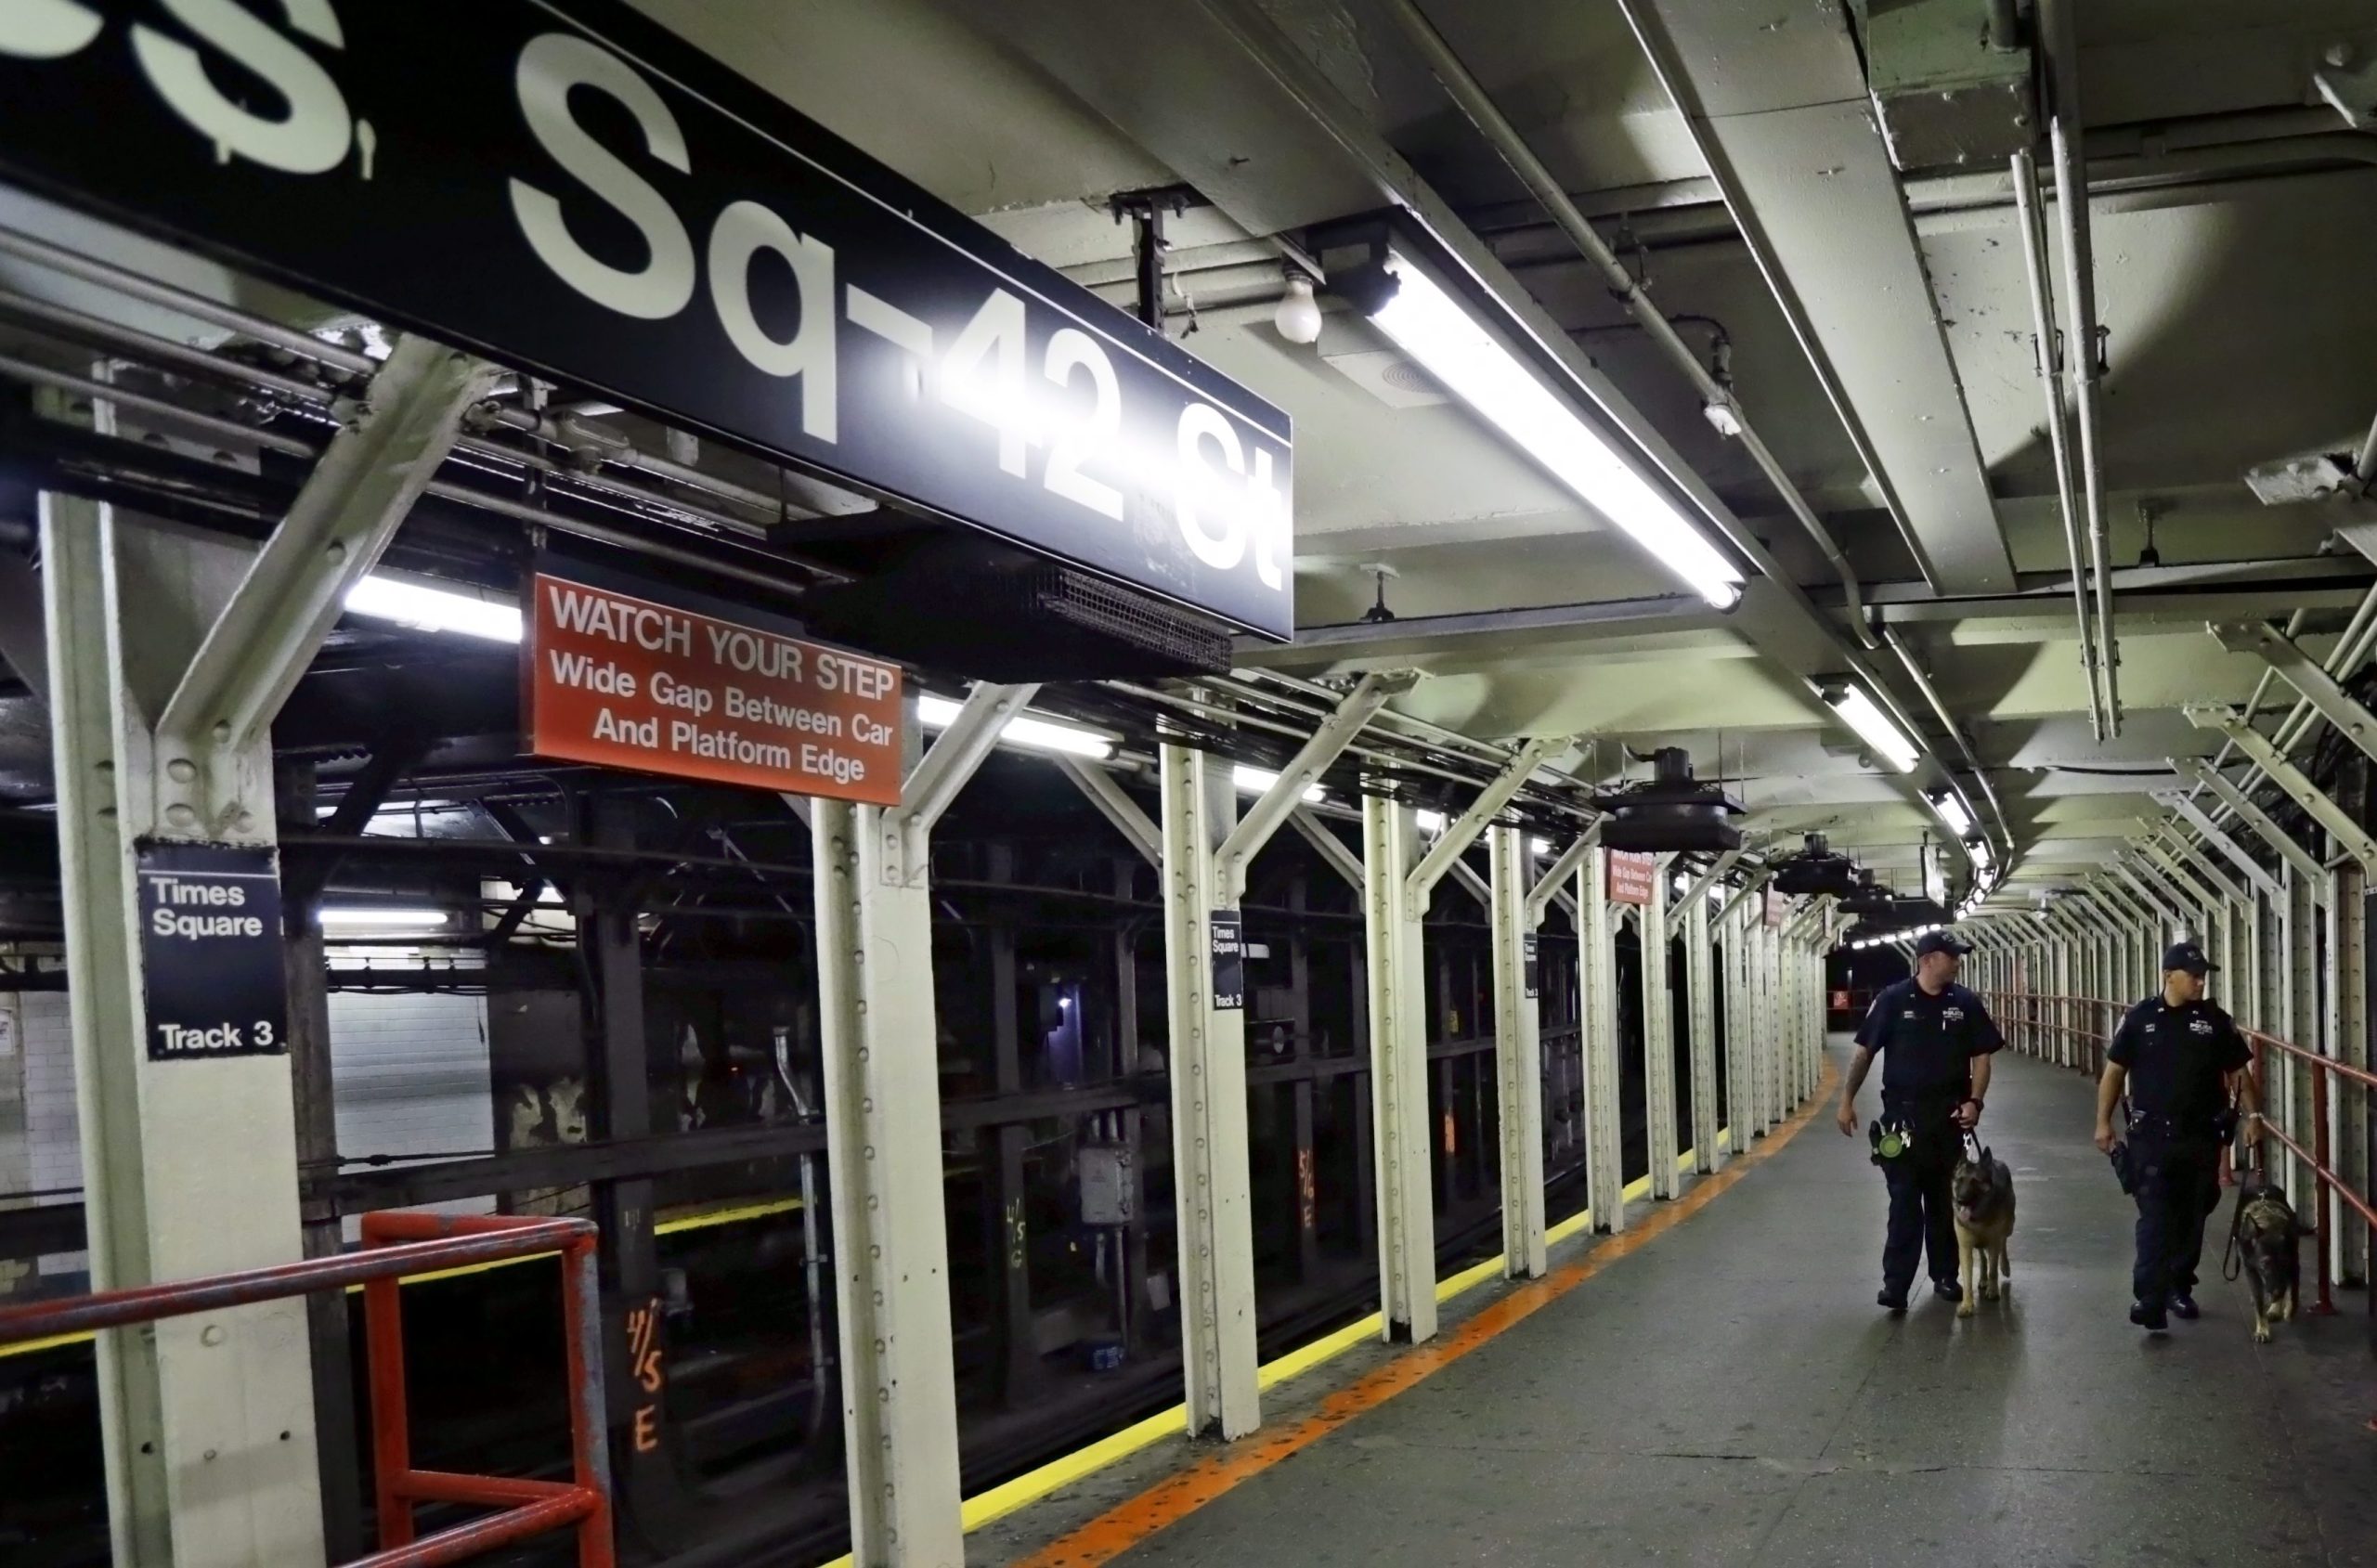 Σκηνές βίας στο μετρό της Νέας Υόρκης: Κοιμήθηκε στον ώμο του και εκείνος τον έδειρε με τρεις αγκωνιές (βίντεο)